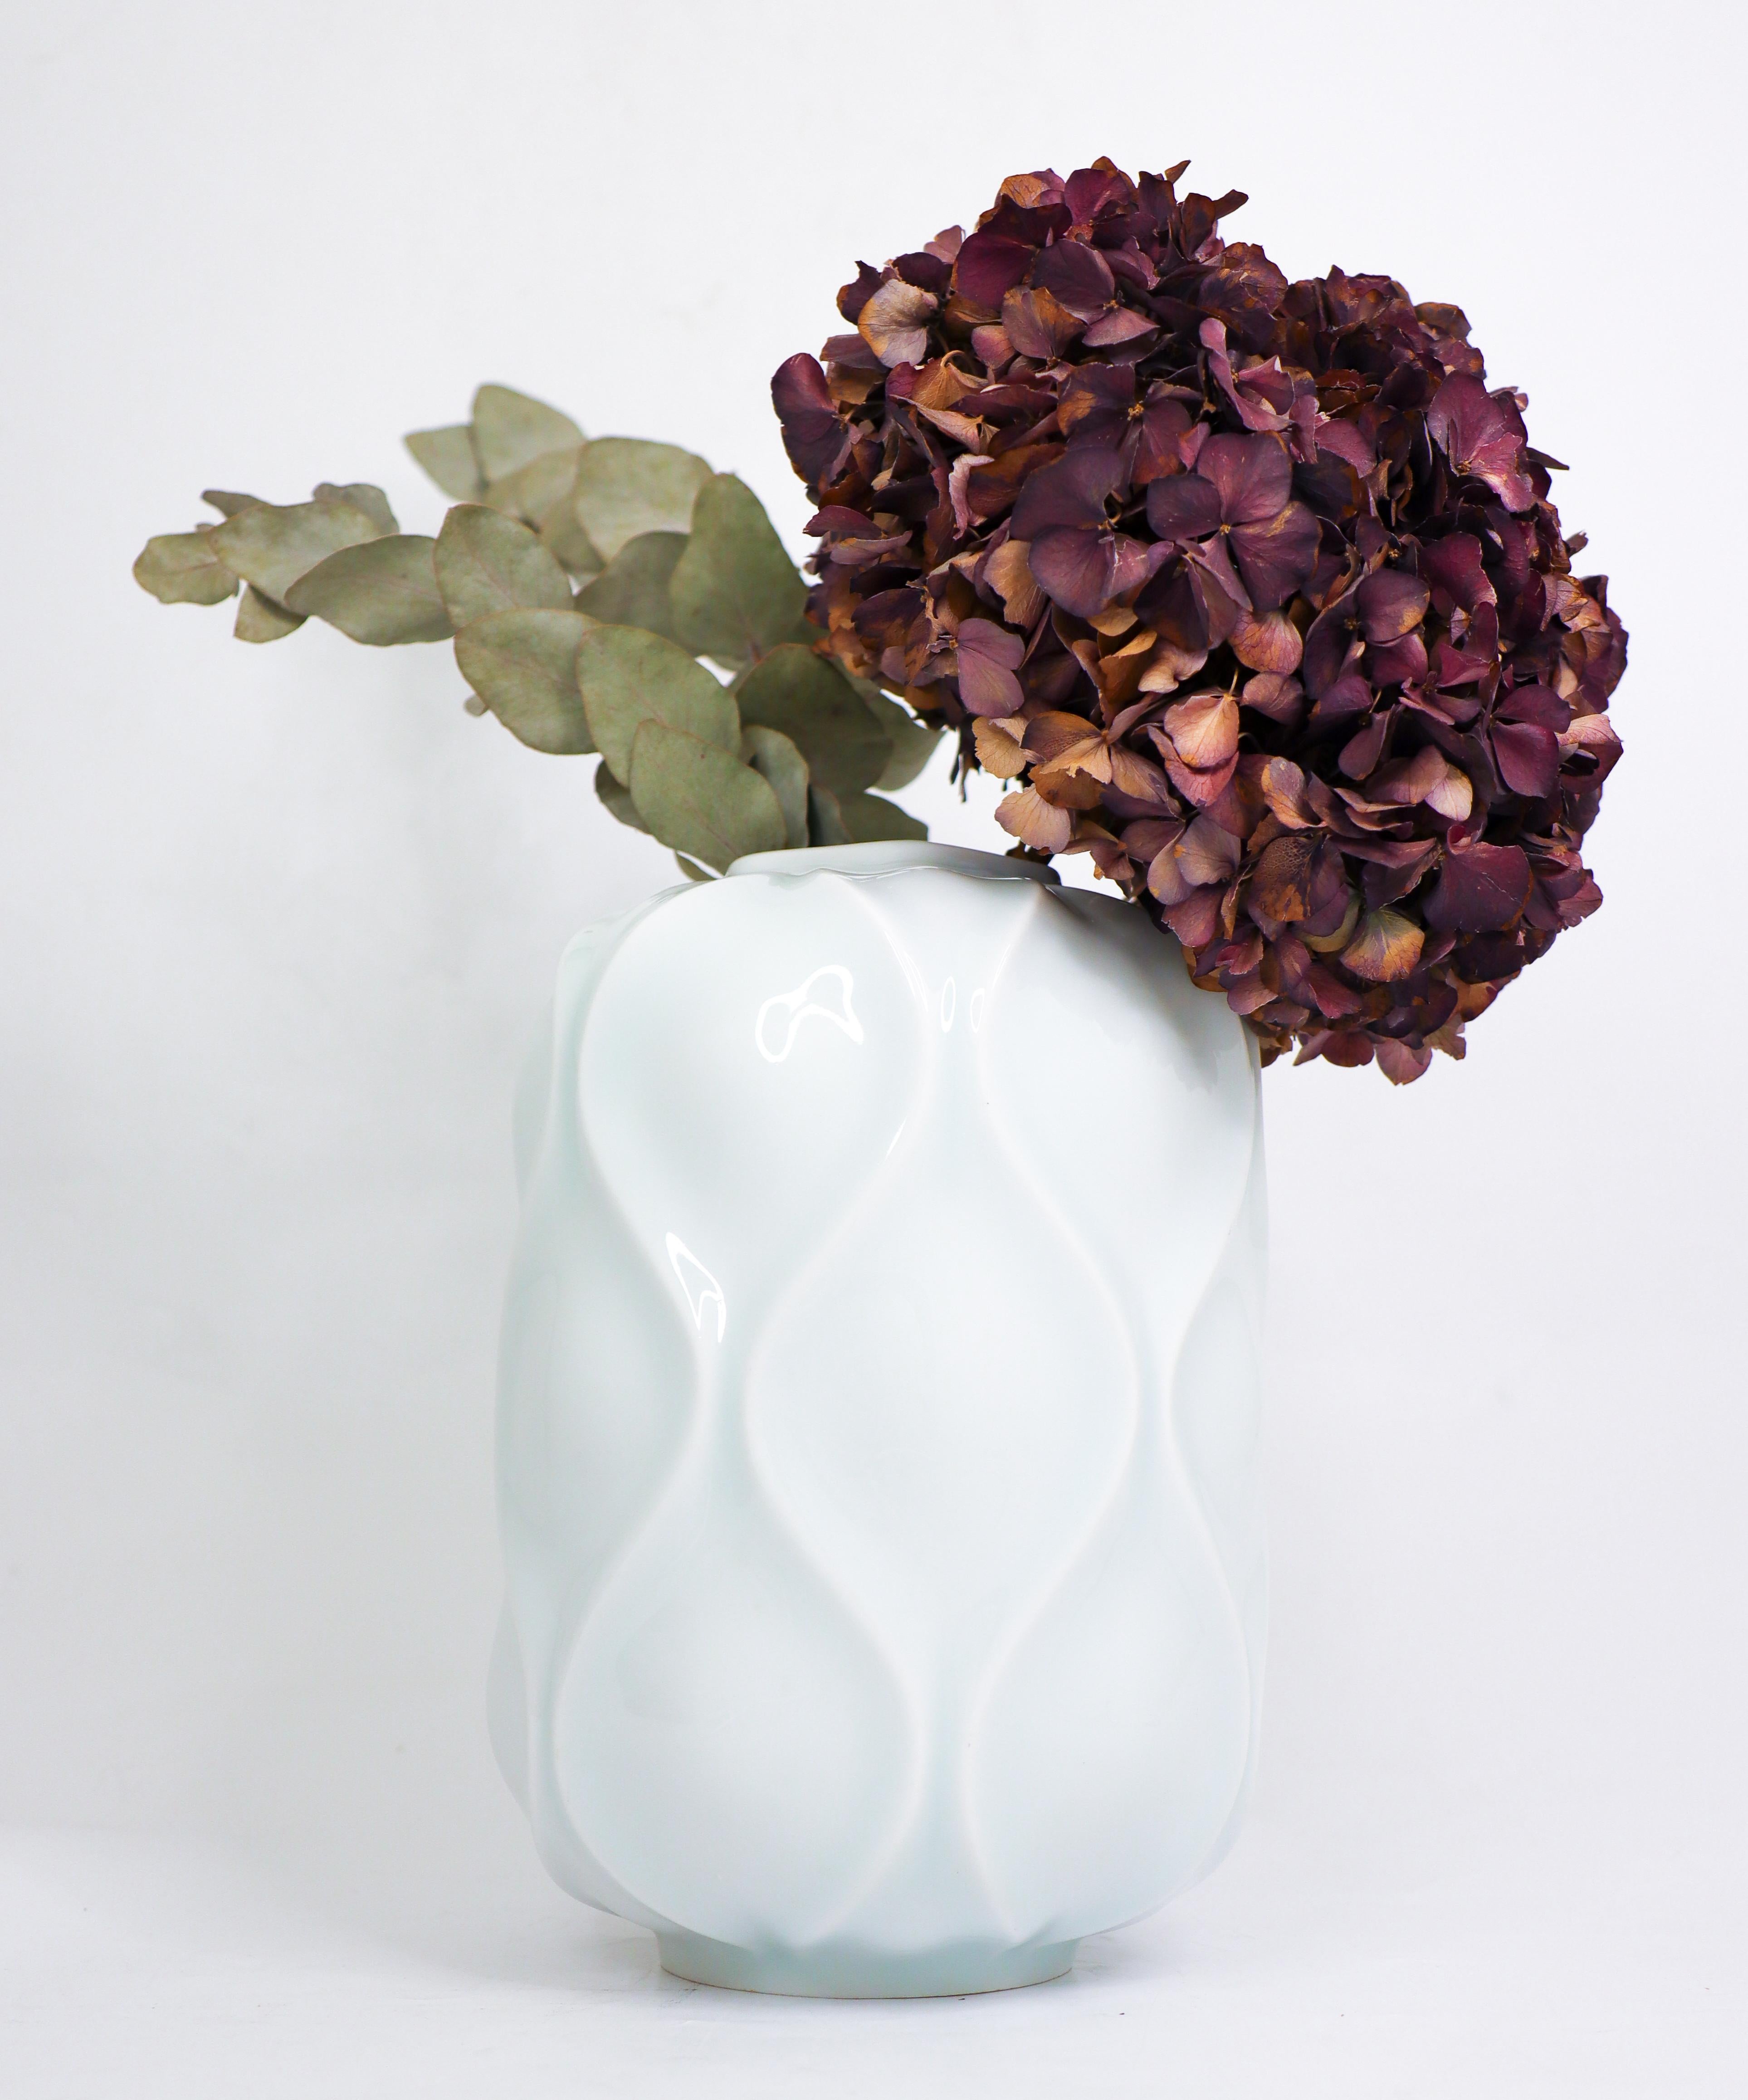 Un joli vase en porcelaine du rare modèle Bari conçu par Sven-Erik Skawonius dans les années 1950 à Upsala Ekeby Karlskrona. La couleur est blanche mais avec une touche de céladon et elle présente un magnifique motif en relief. Le vase est en